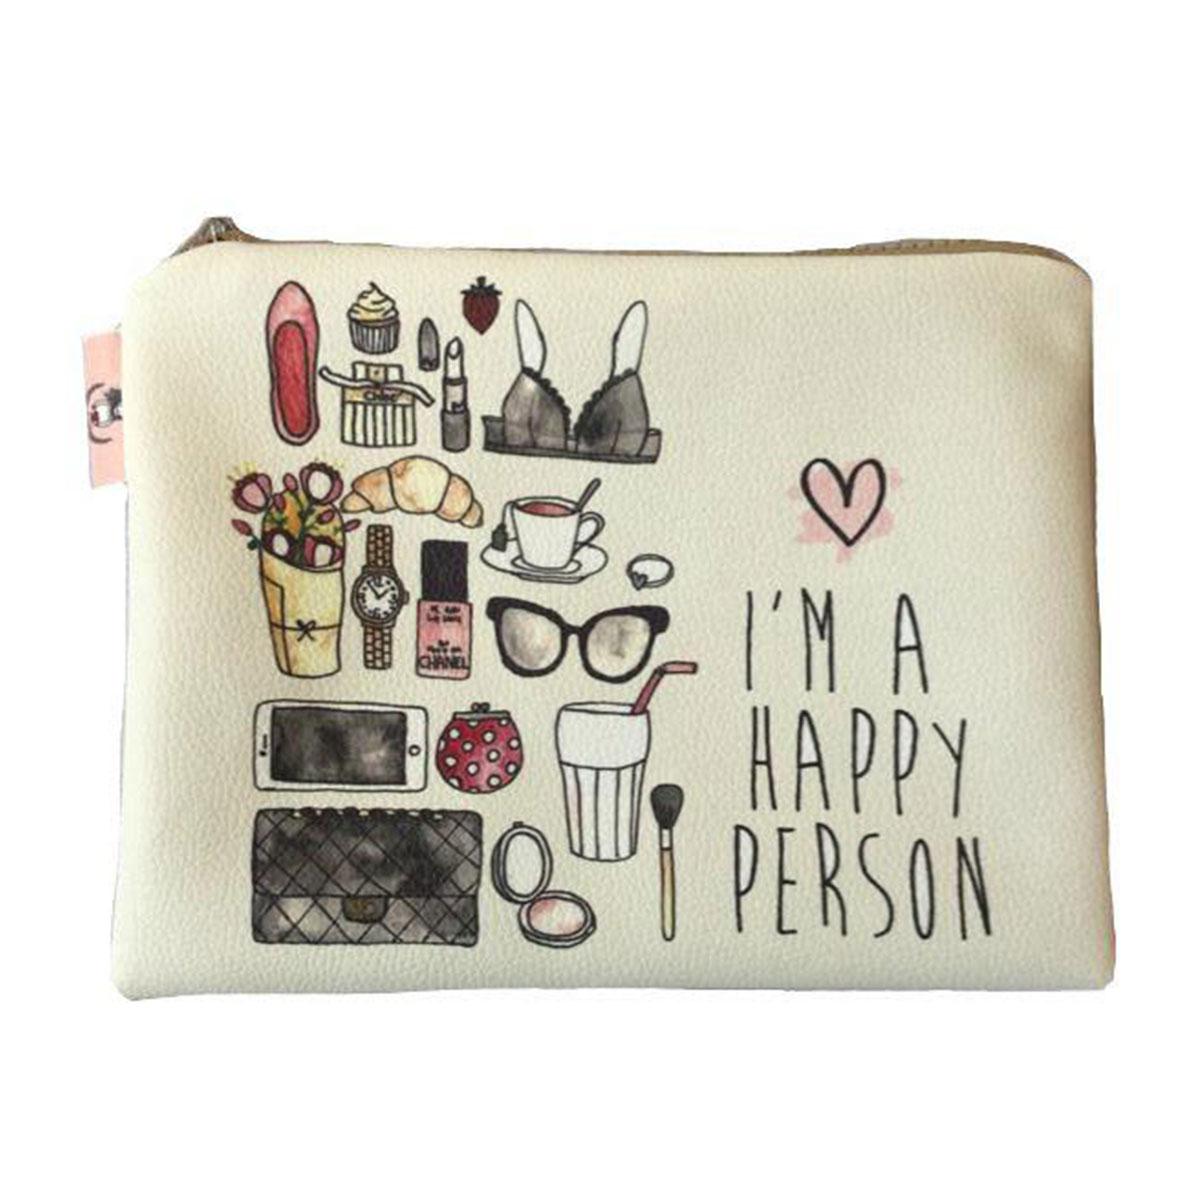 کیف آرایشی آی ام هپی - I am happy makeup bag 